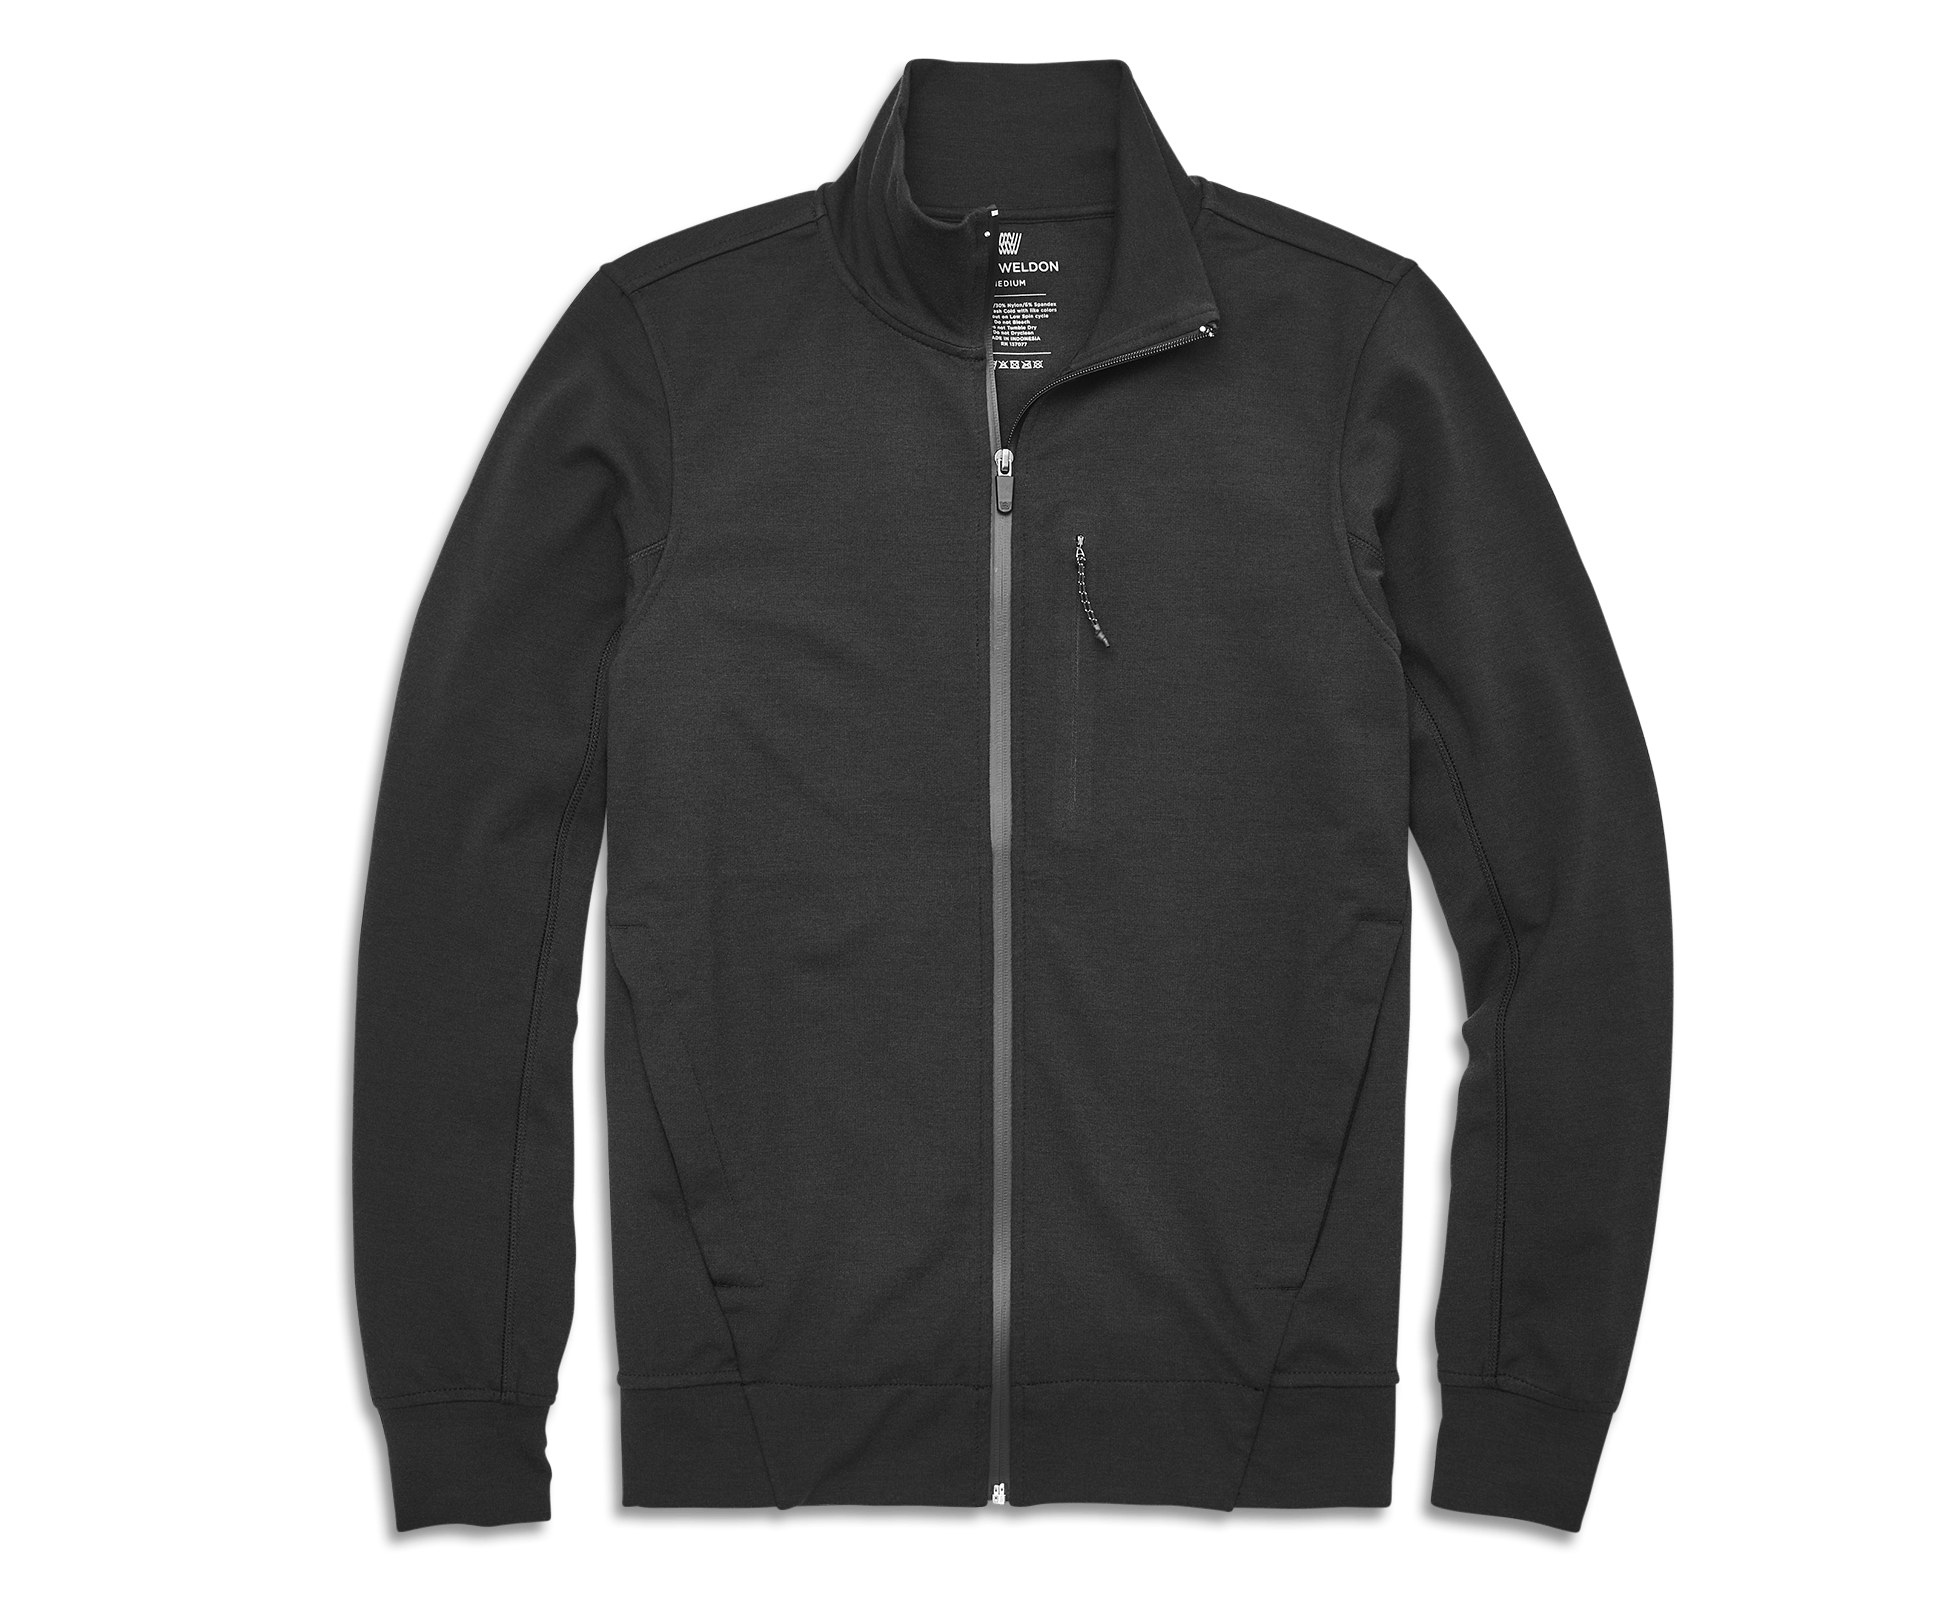 Mack Weldon Men's Atlas Full-Zip Jacket True Black